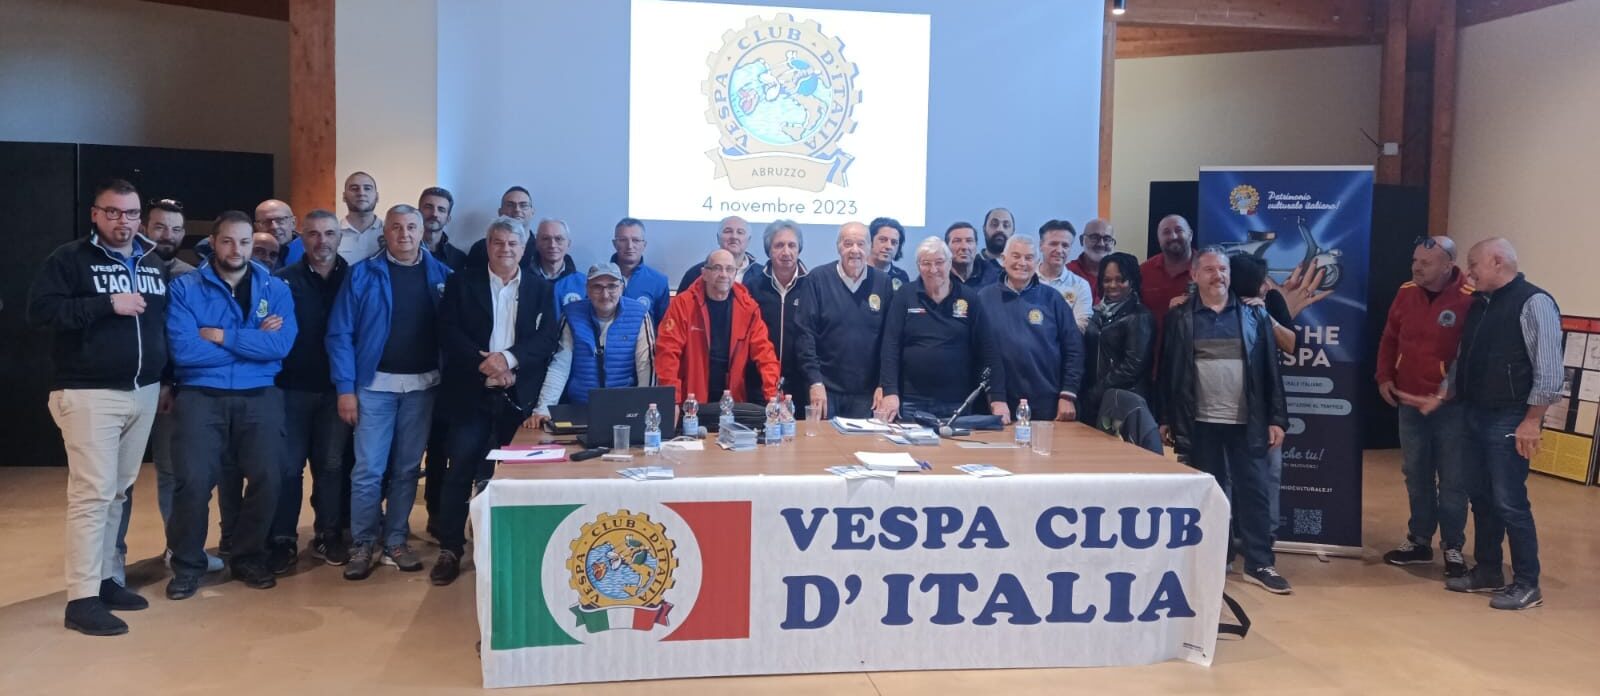 Riunione dei Vespa Club d’Abruzzo